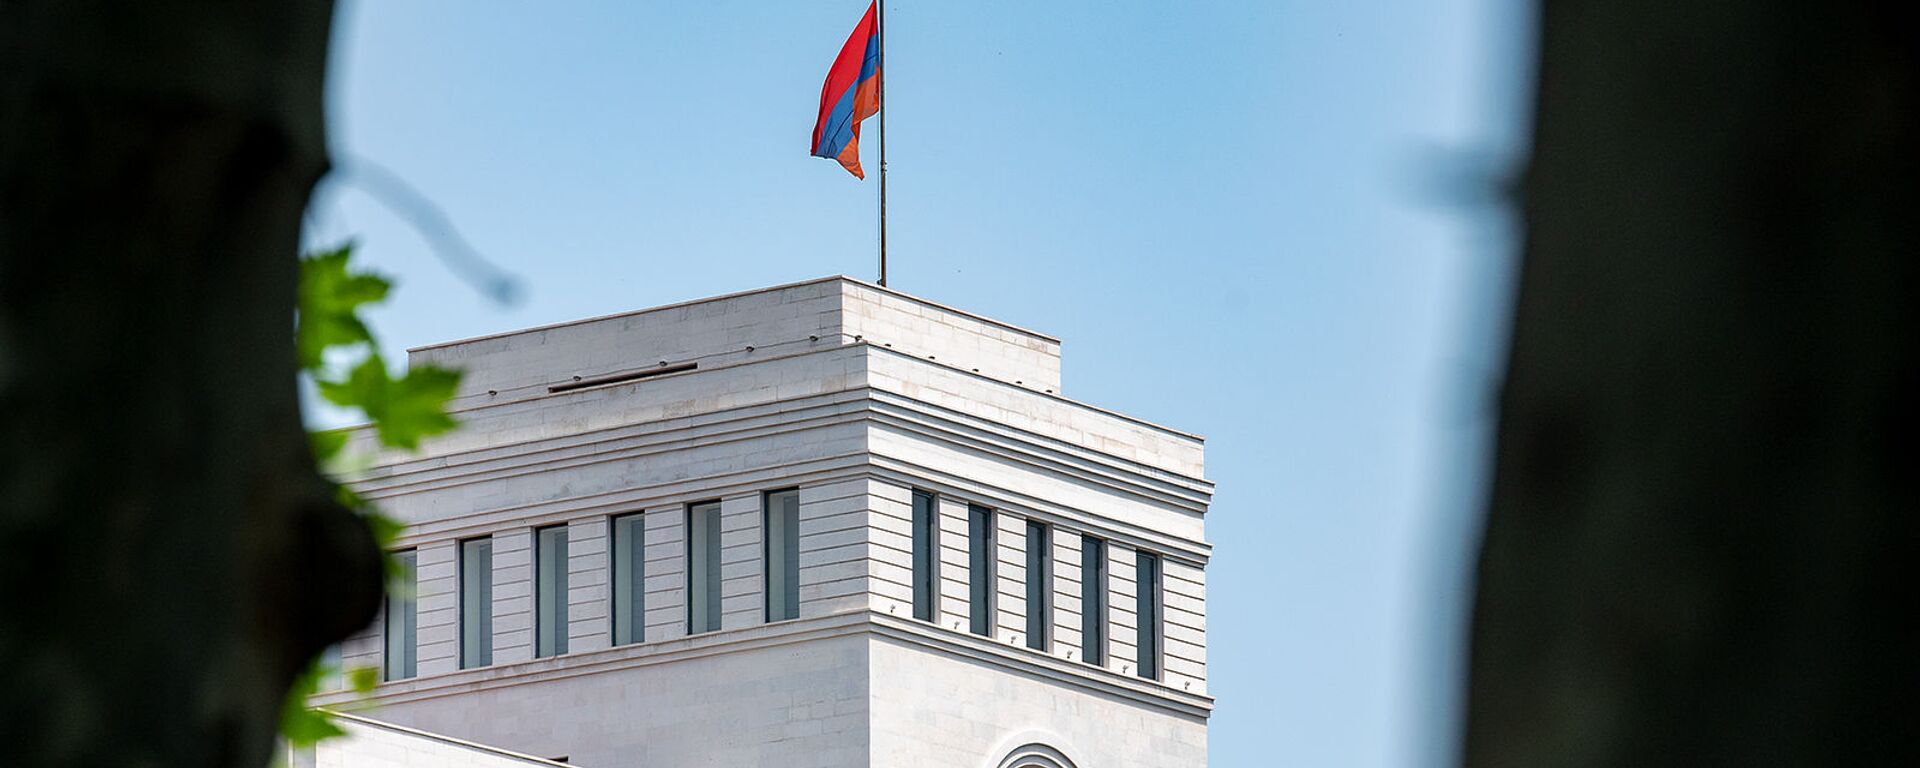 Здание Министерства иностранных дел Армении - Sputnik Армения, 1920, 24.02.2021